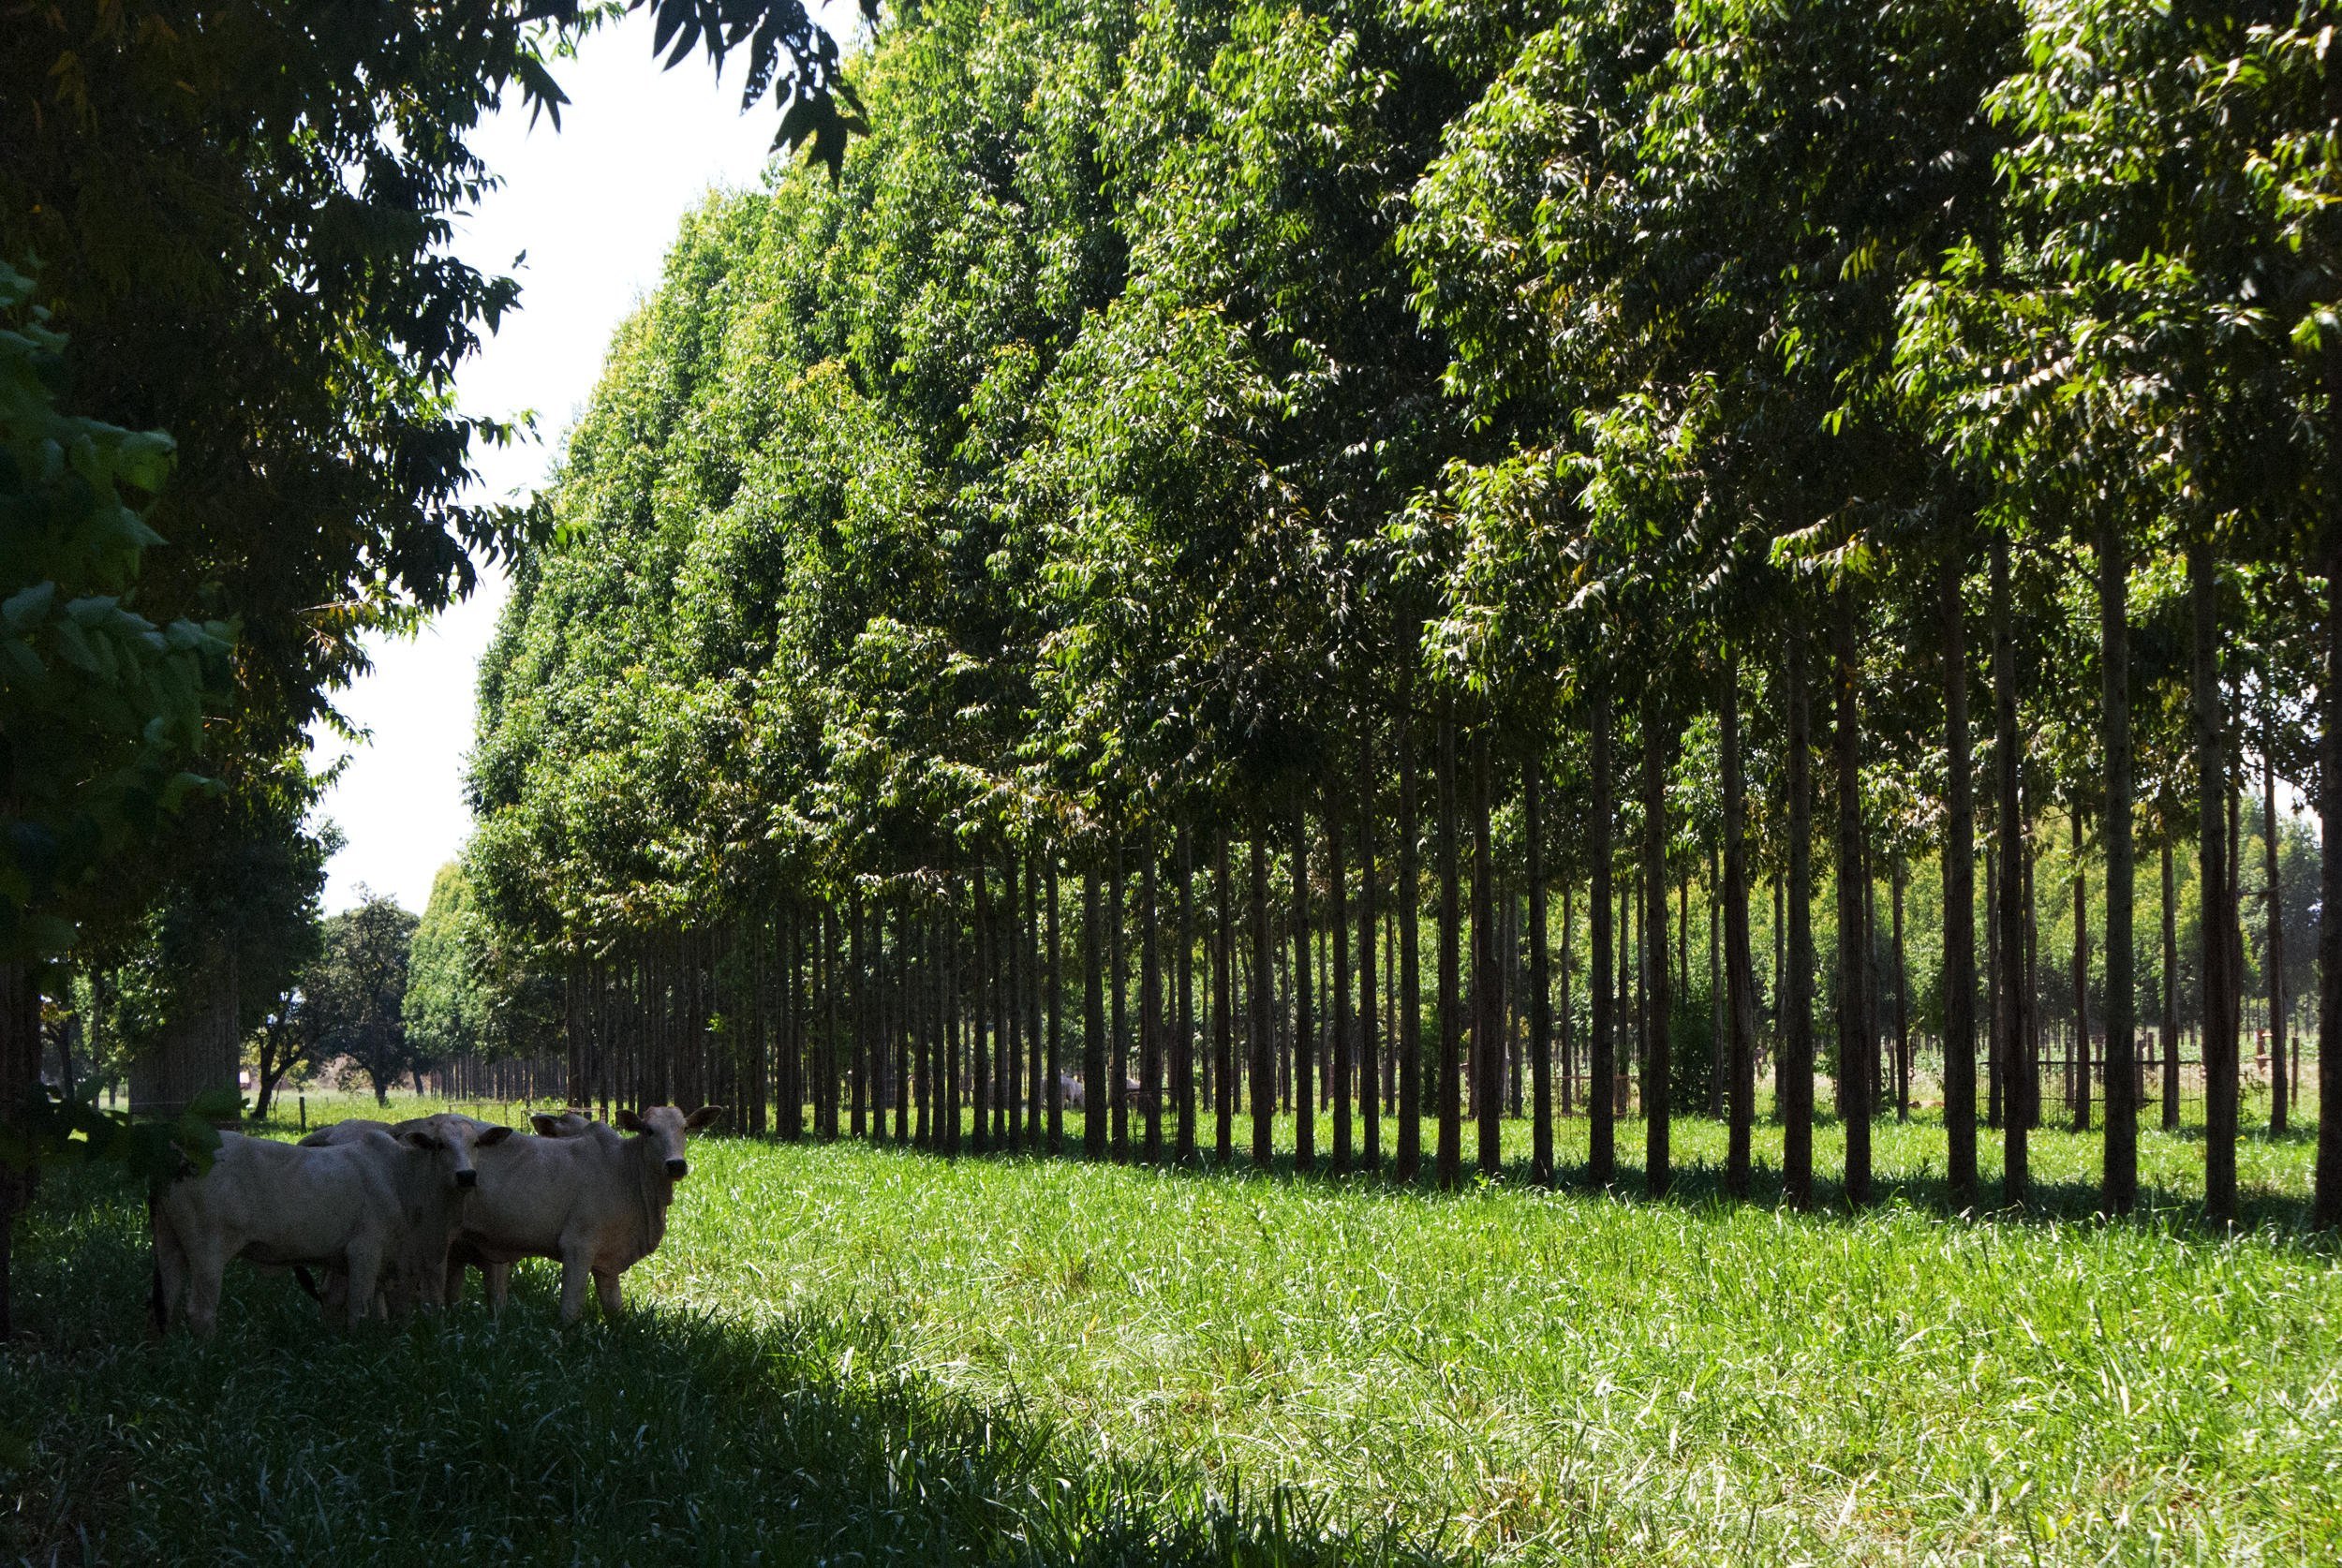 hero_Soja, boi e árvore: a tecnologia brasileira para um agro sustentável